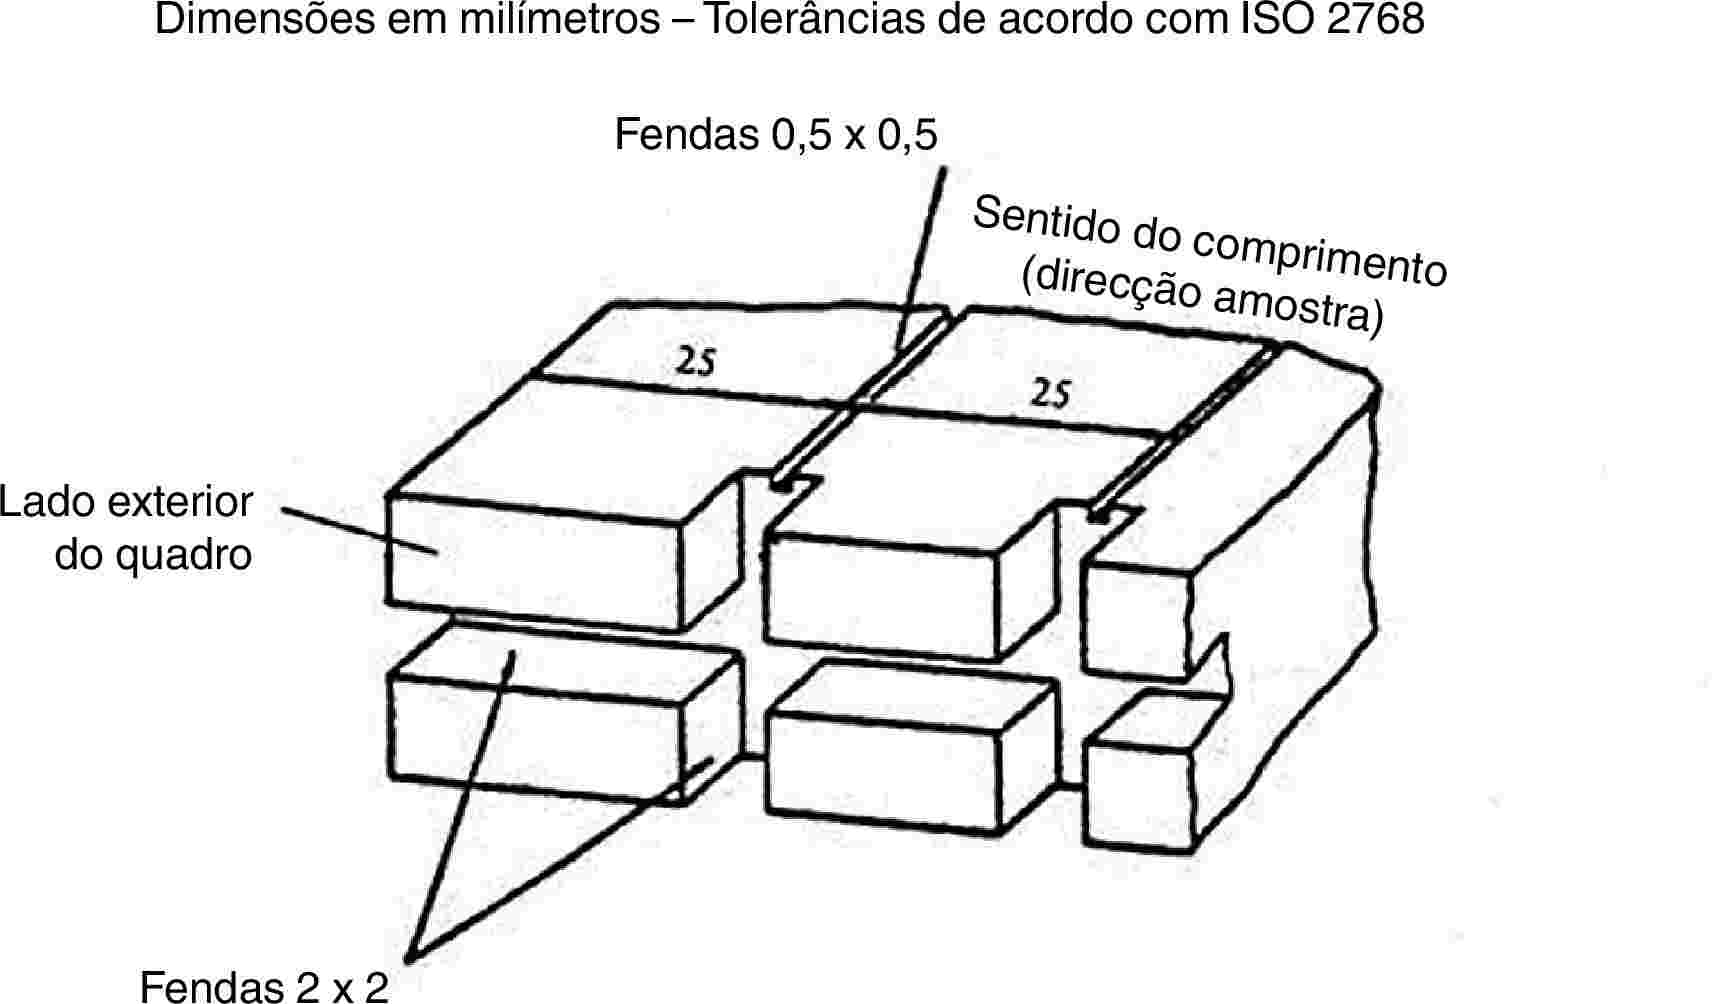 Dimensões em milímetros – Tolerâncias de acordo com ISO 2768Fendas 0,5 x 0,5Sentido do comprimento (direcção amostra)Lado exterior do quadroFendas 2 x 2